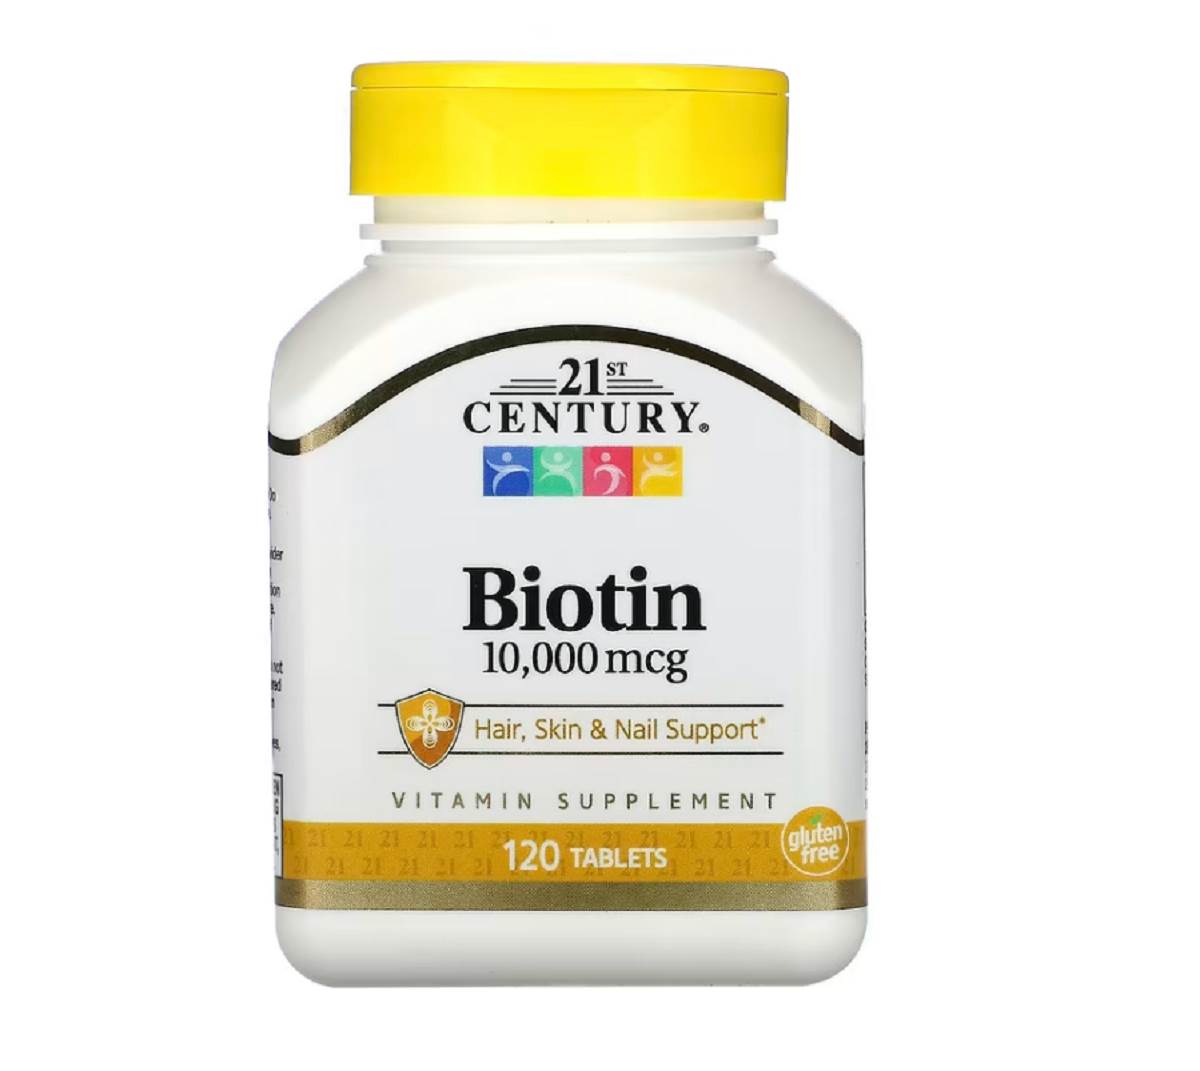  Biotin ima sposobnost da podstiče rast zdrave kose. 